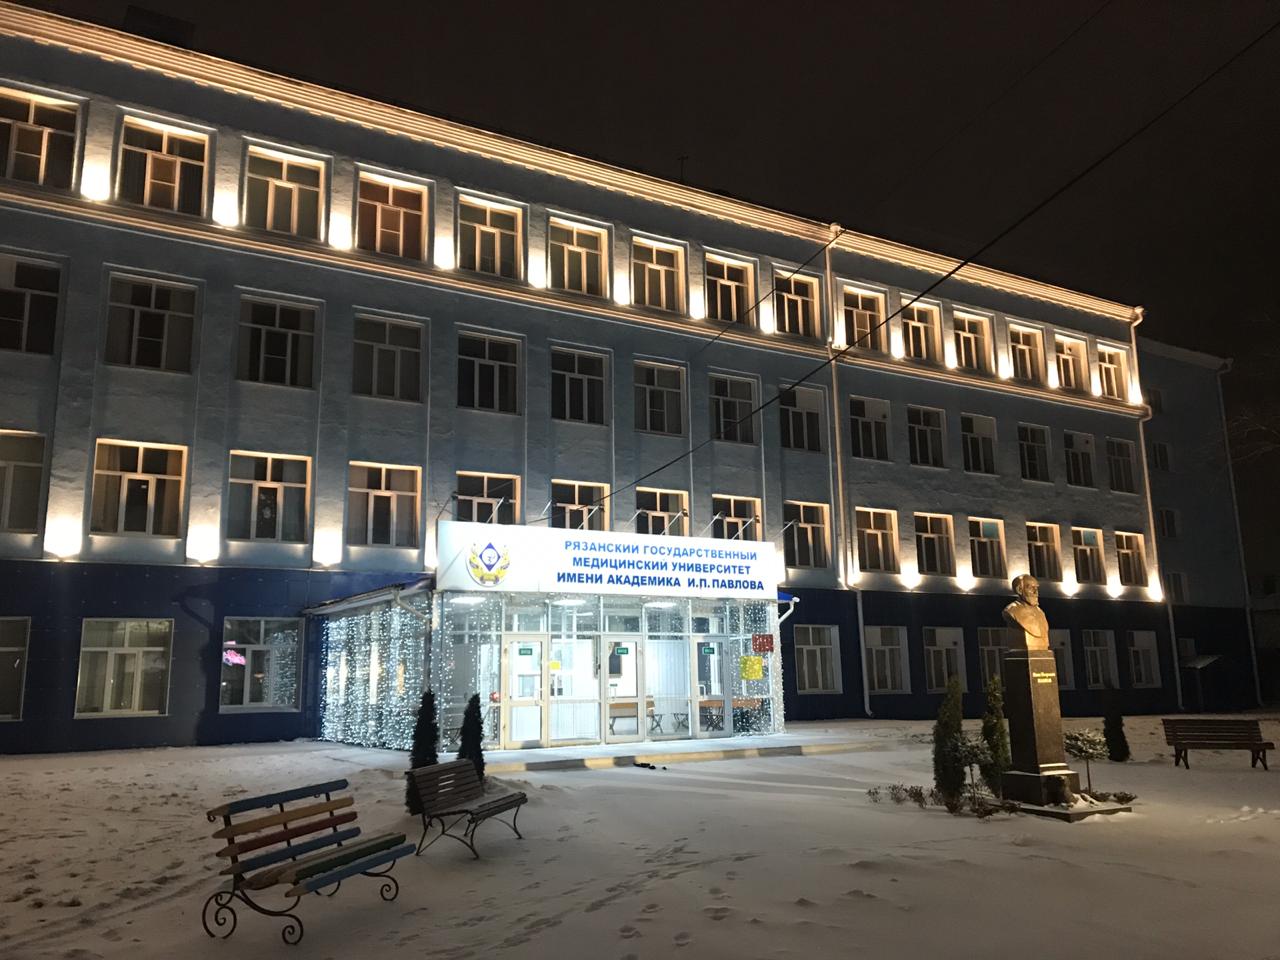 Архитектурная подсветка зданий появляется на новых объектах 29.01.2020